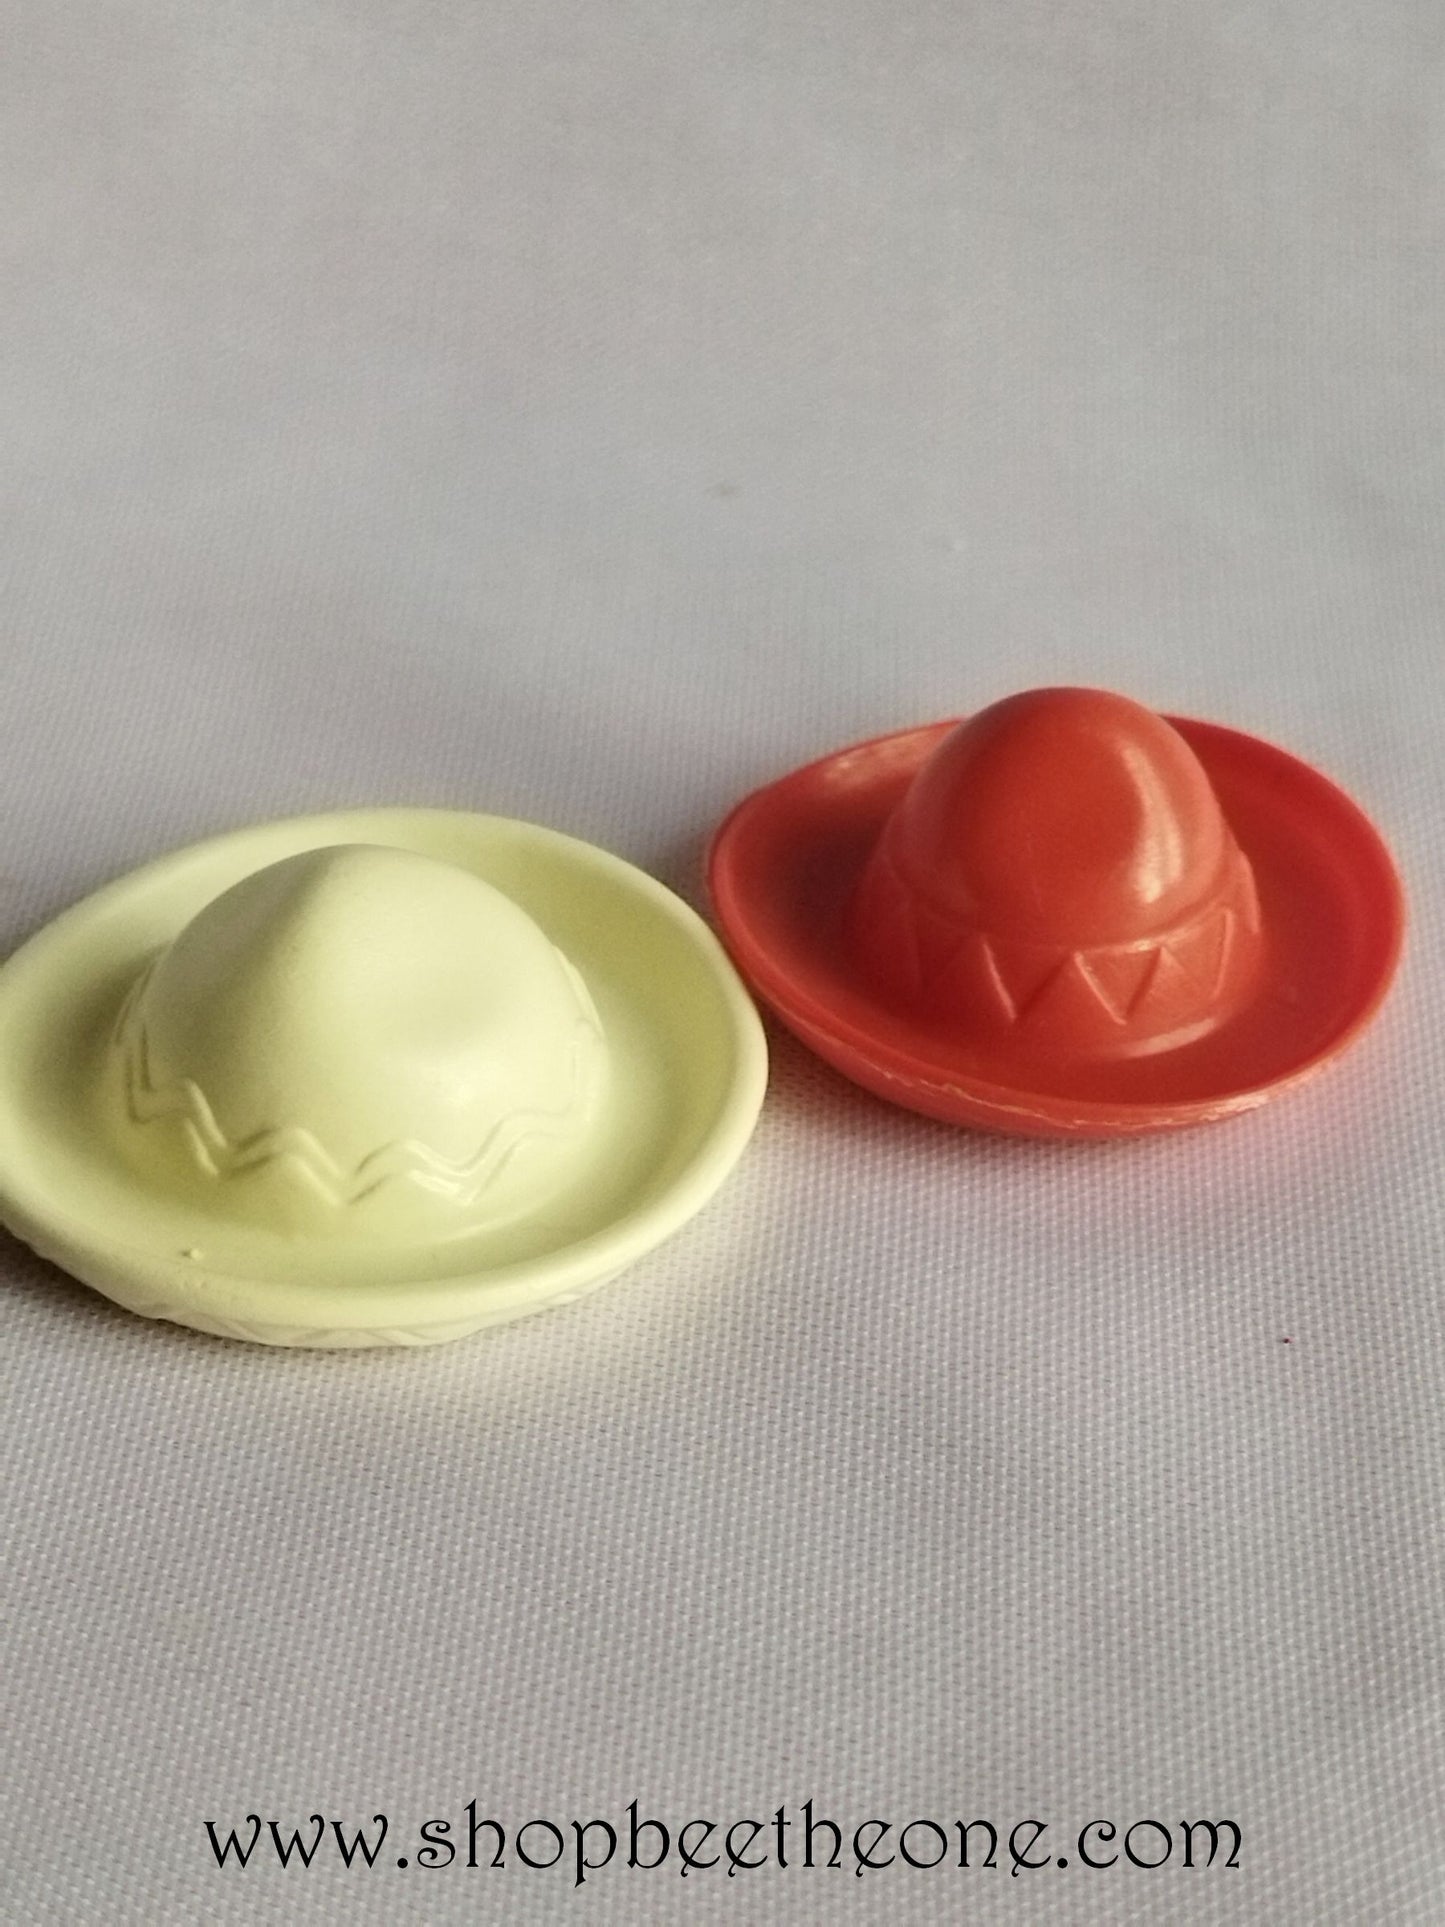 Lot de 2 Chapeaux Sombrero pour adulte et enfant - Playmobil - Blanc et rouge